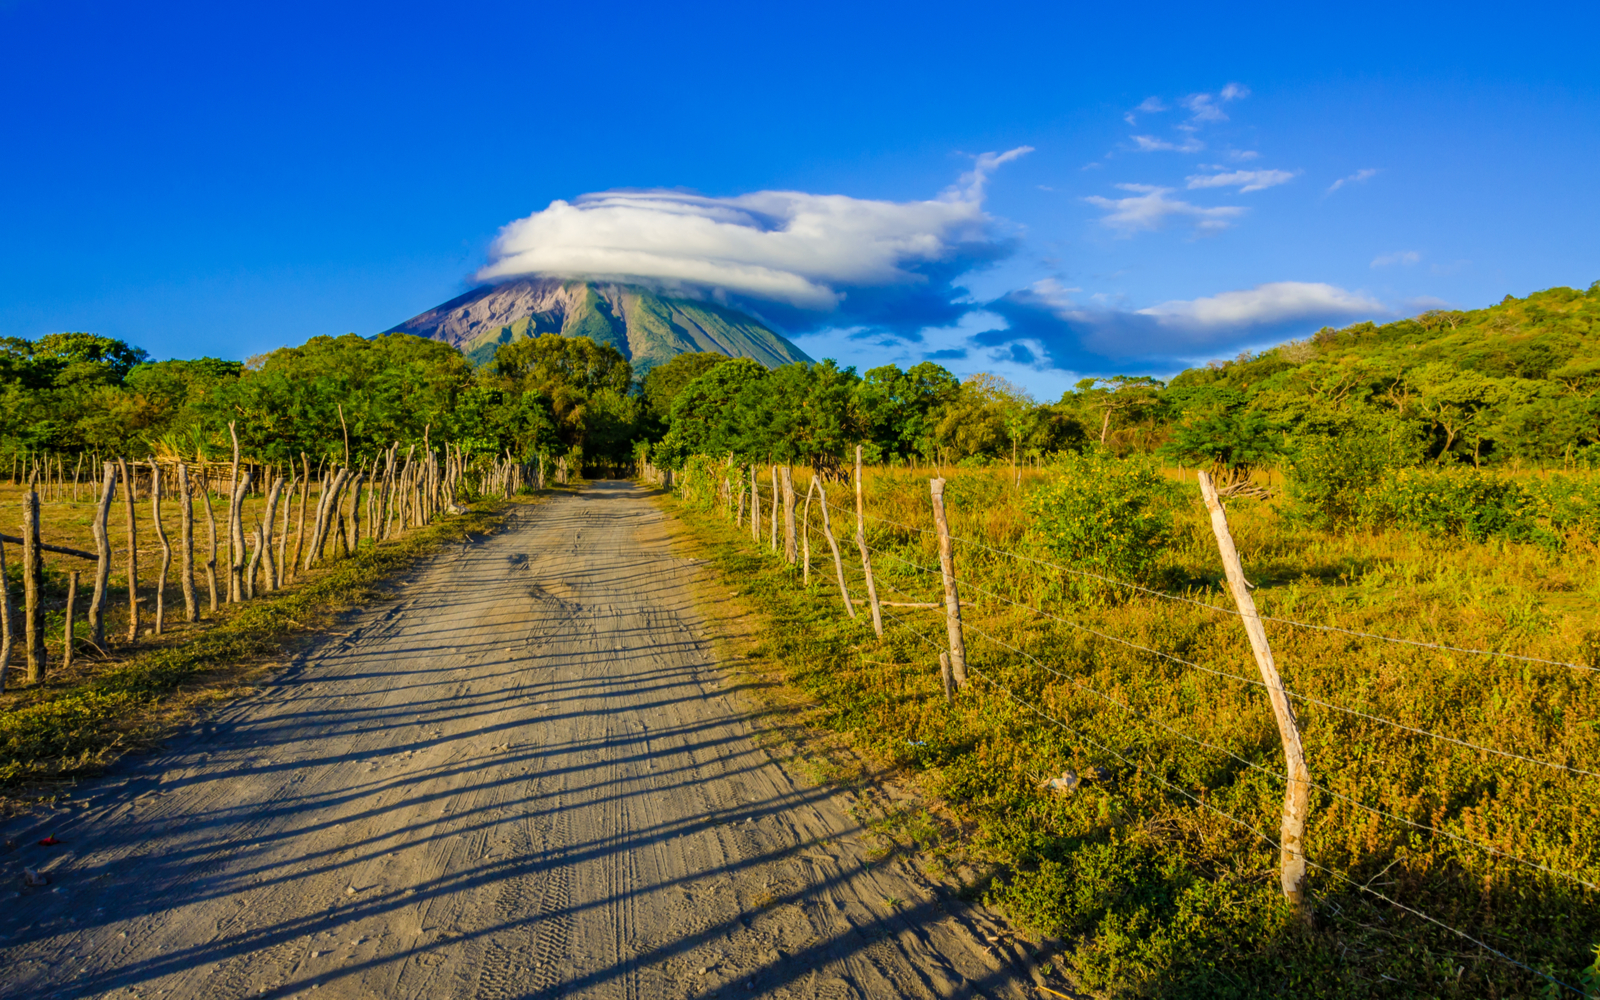 Is Nicaragua Safe? | Travel Tips & Safety Concerns